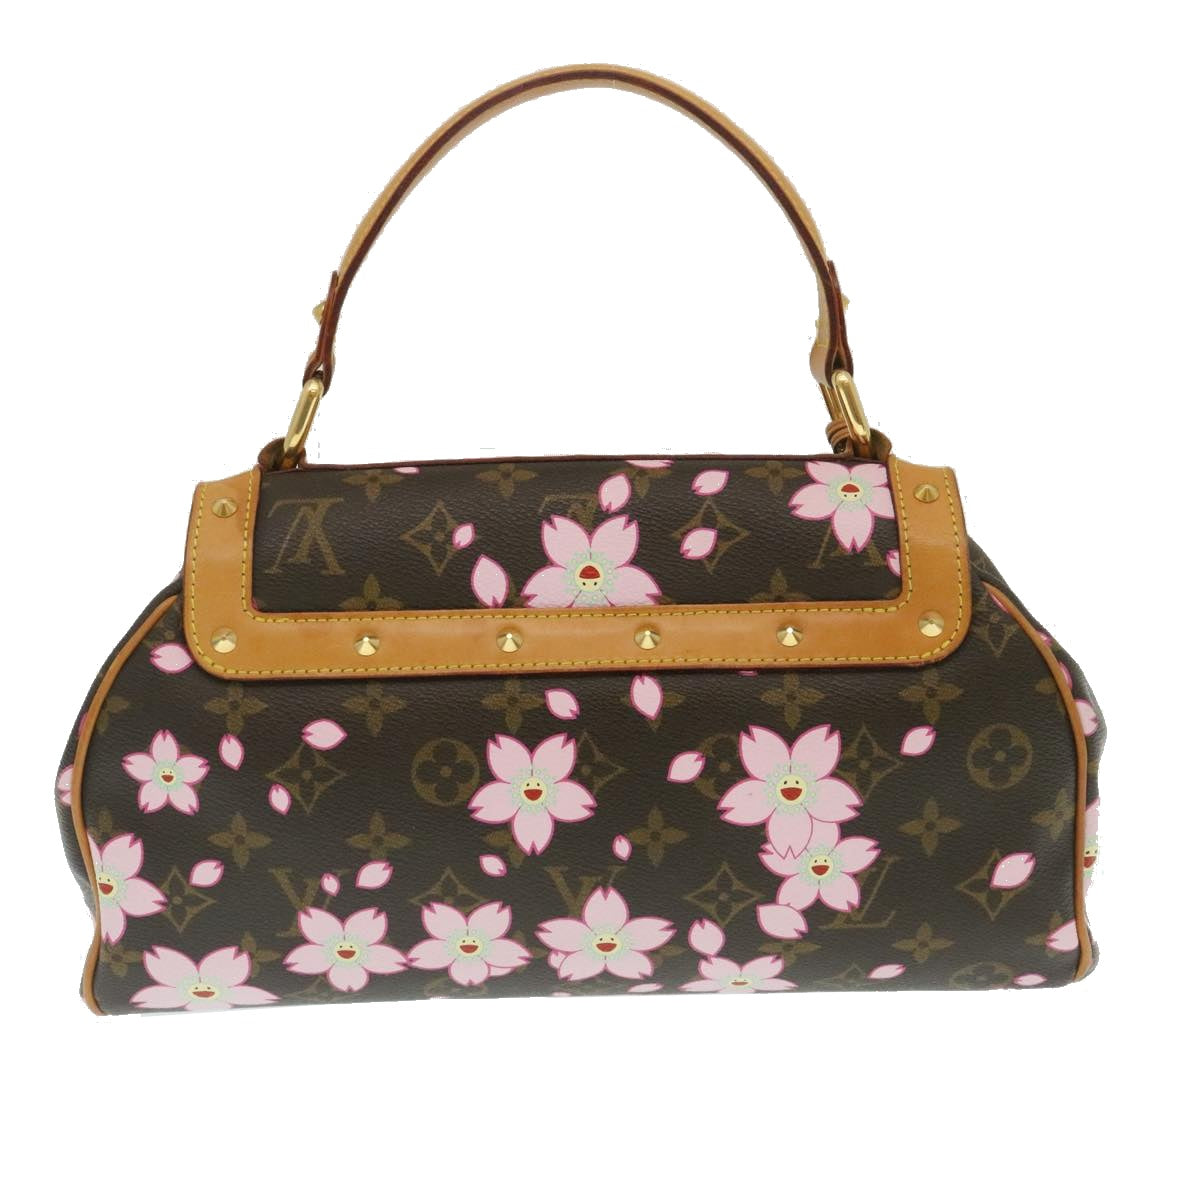 LOUIS VUITTON Monogram Cherry Blossom Sac Retro PM Hand Bag M92012 Auth 29255A - 0